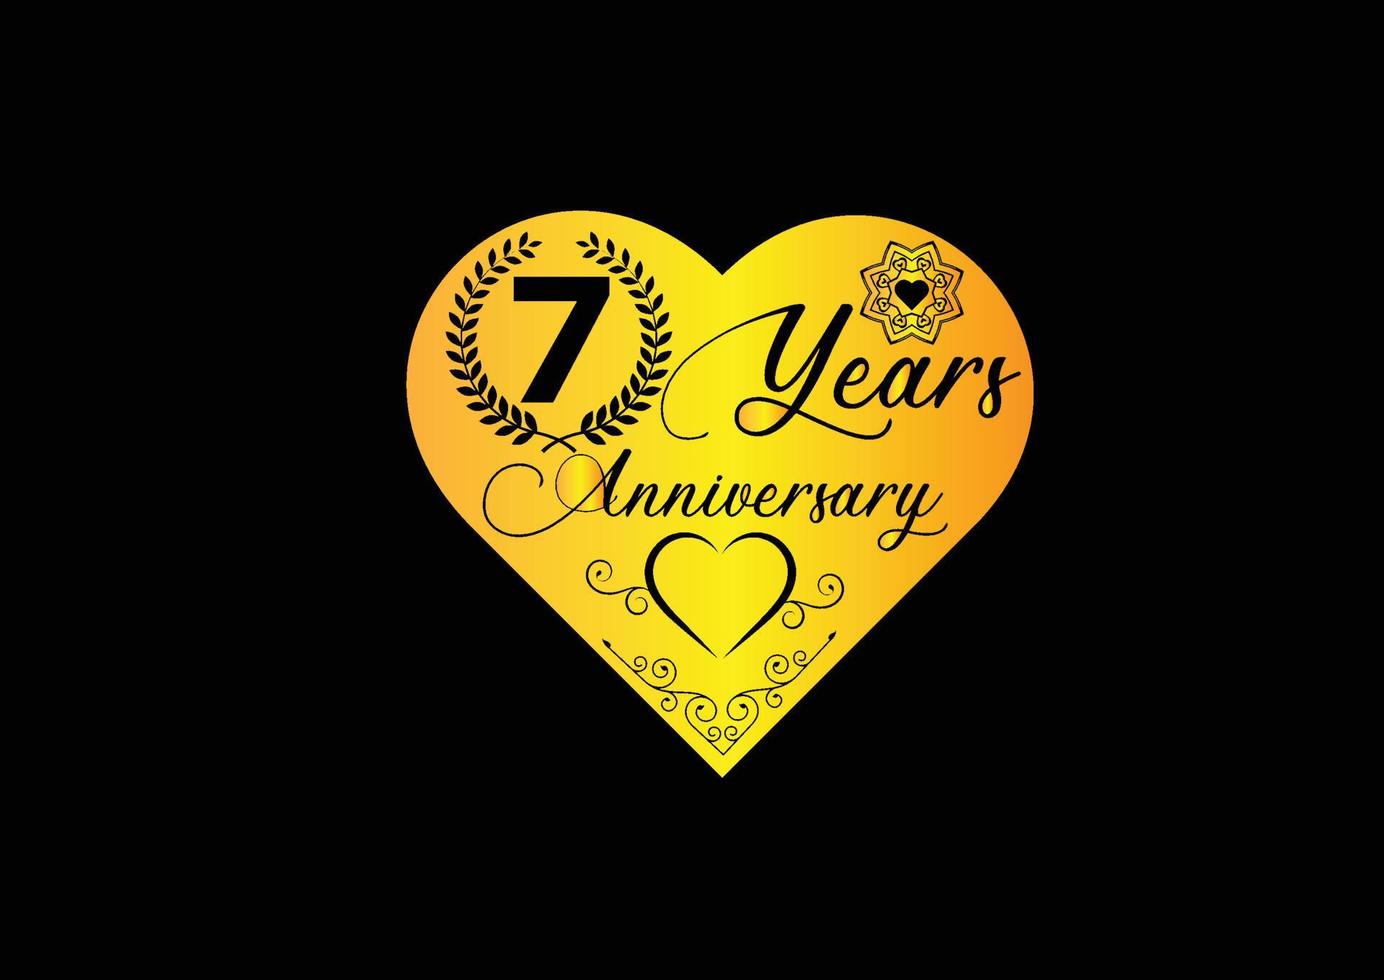 Célébration d'anniversaire de 7 ans avec logo d'amour et conception d'icônes vecteur